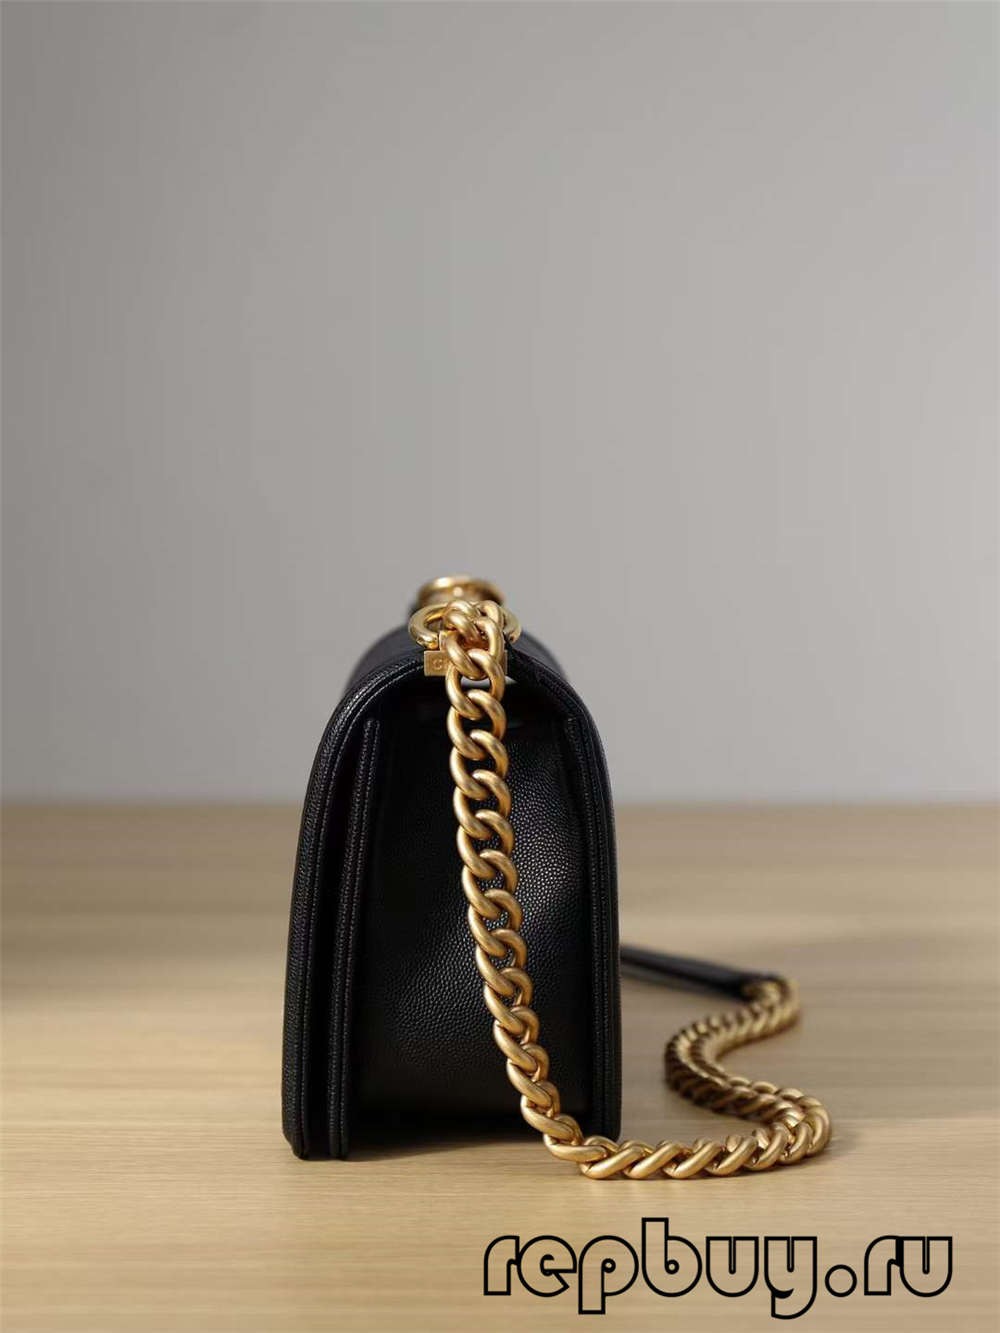 Верхня копія сумки Chanel Leboy із середньою золотою пряжкою (видання 2022 року) - Інтернет-магазин підробленої сумки Louis Vuitton найкращої якості, копія дизайнерської сумки ru